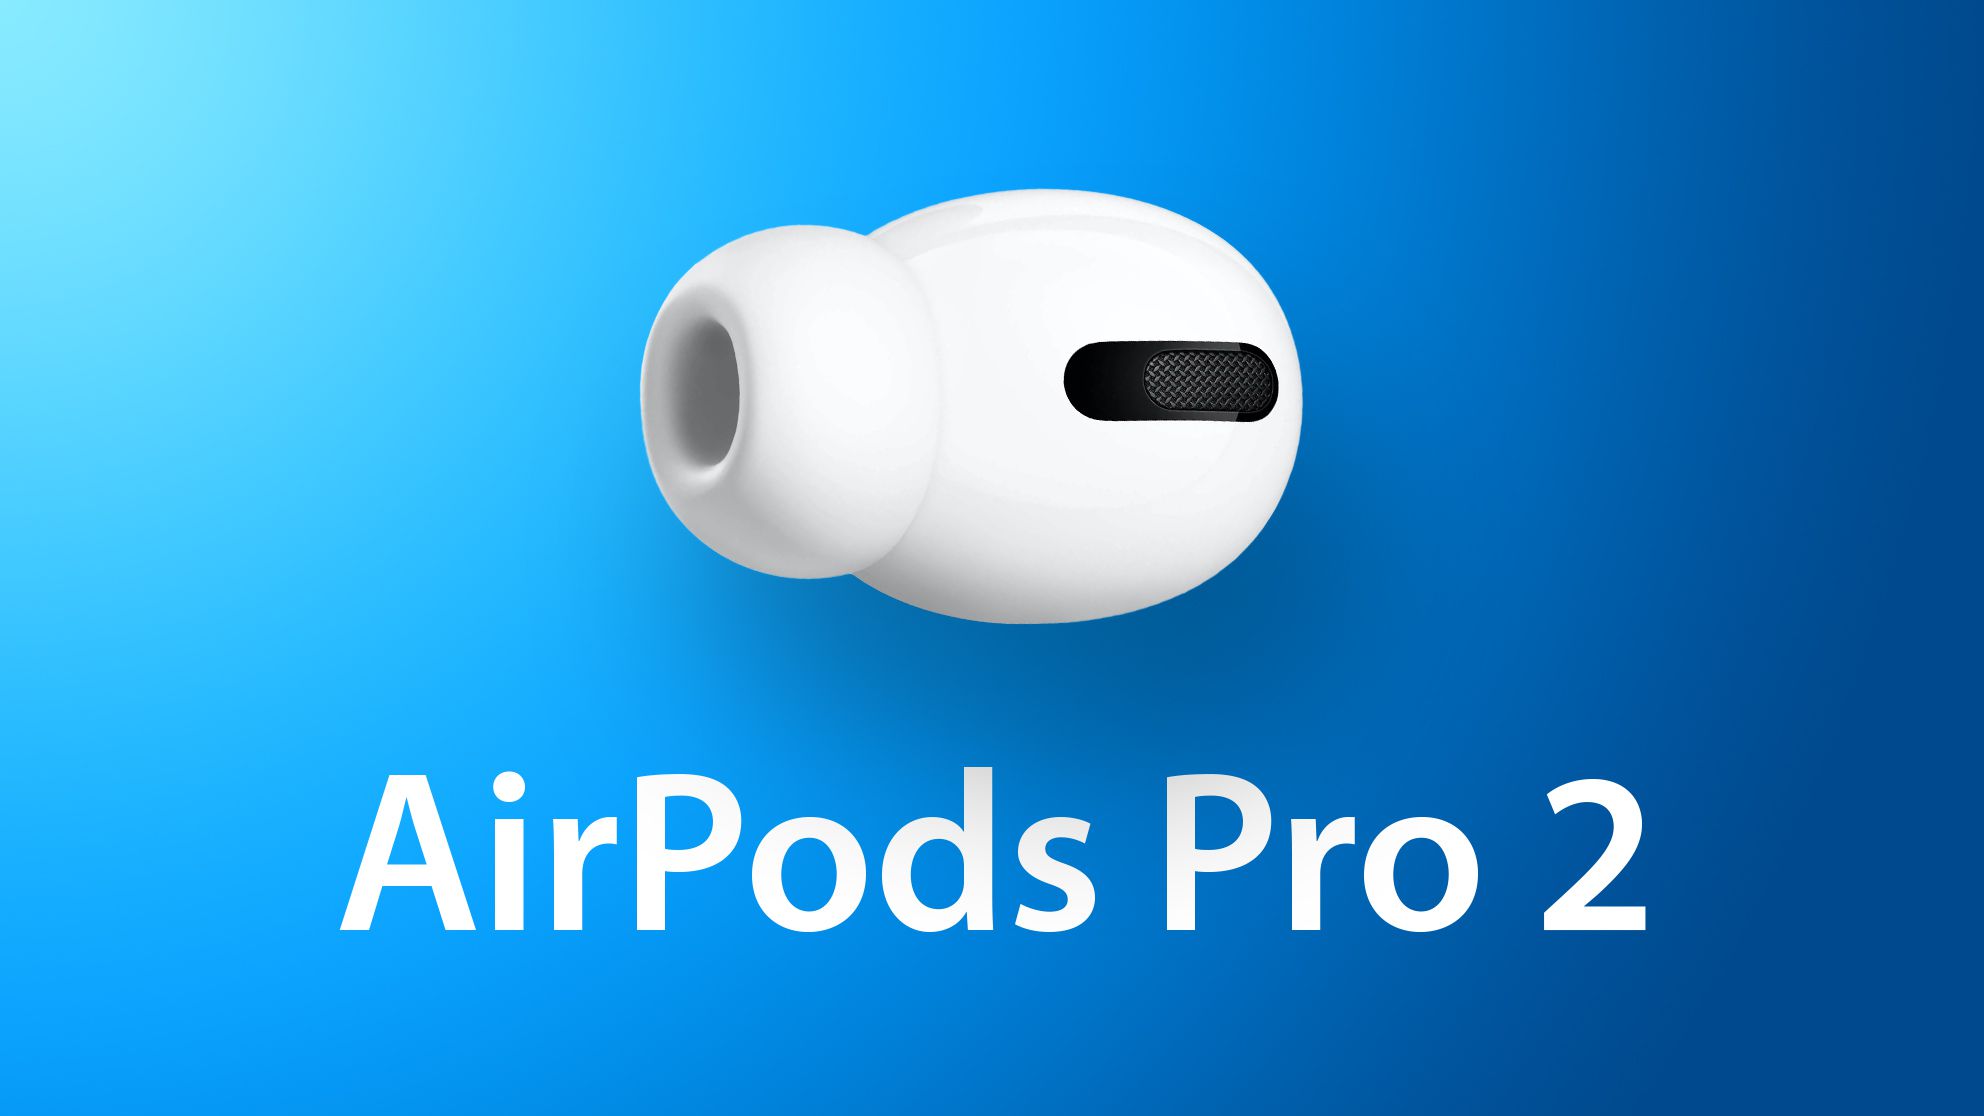 Jeg spiser morgenmad produktion helgen Apple AirPods Pro 2 - data premiery, cena, specyfikacja techniczna  [06.07.2022] - PC World - Testy i Ceny sprzętu PC, RTV, Foto, Porady IT,  Download, Aktualności